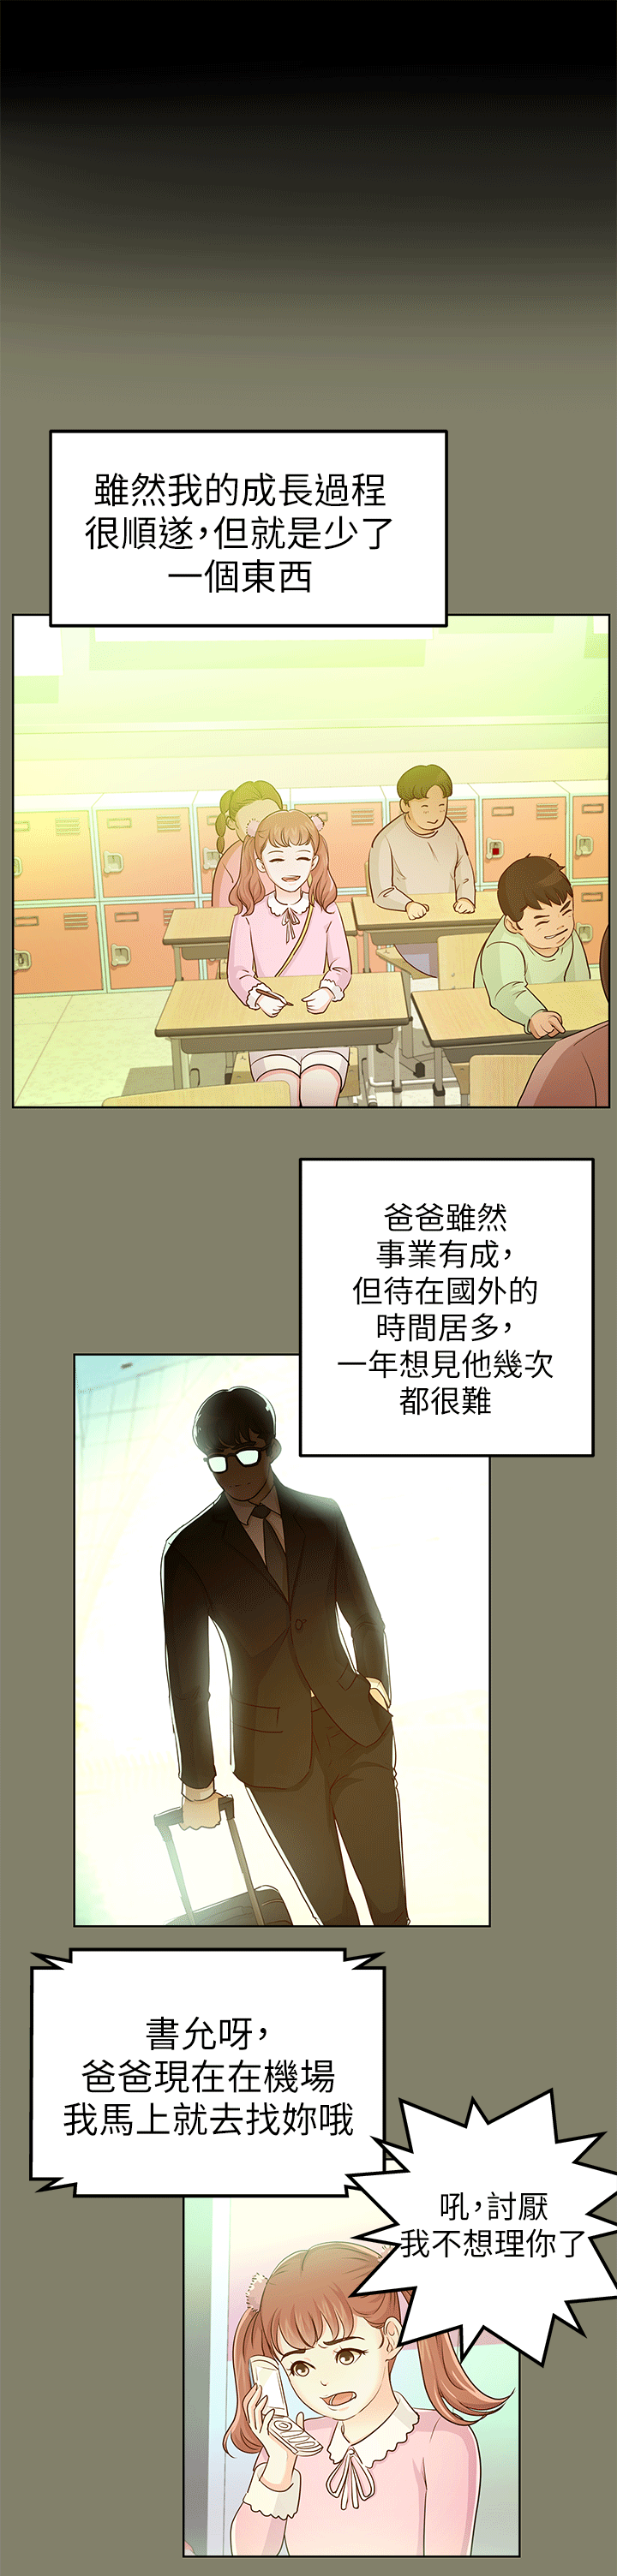 韩国污漫画 養女 第11话 9